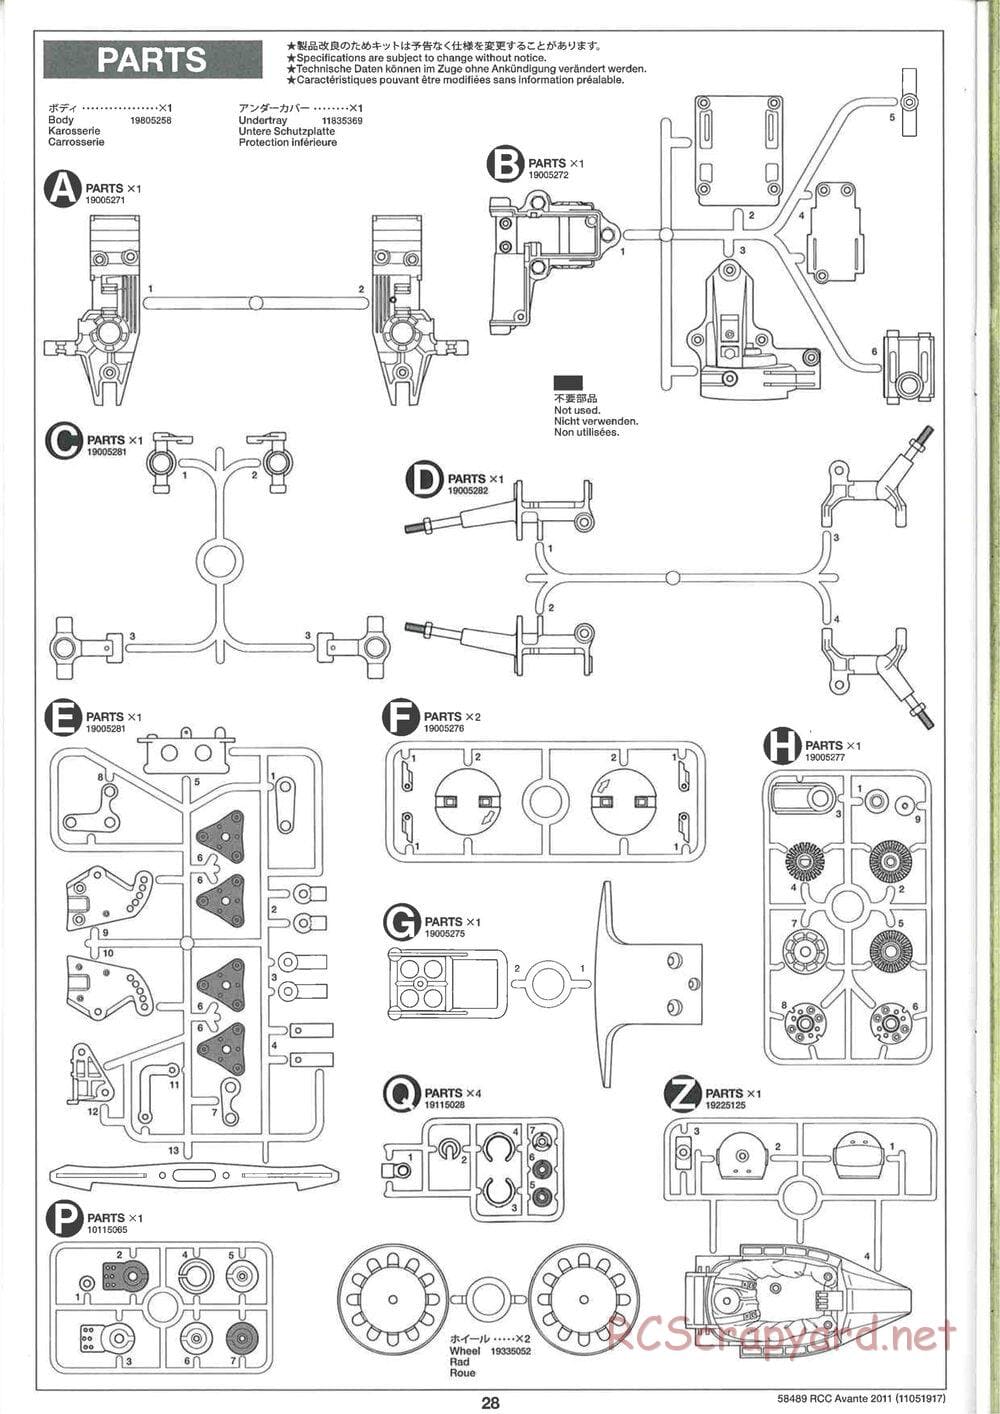 Tamiya - Avante 2011 - AV Chassis - Manual - Page 28